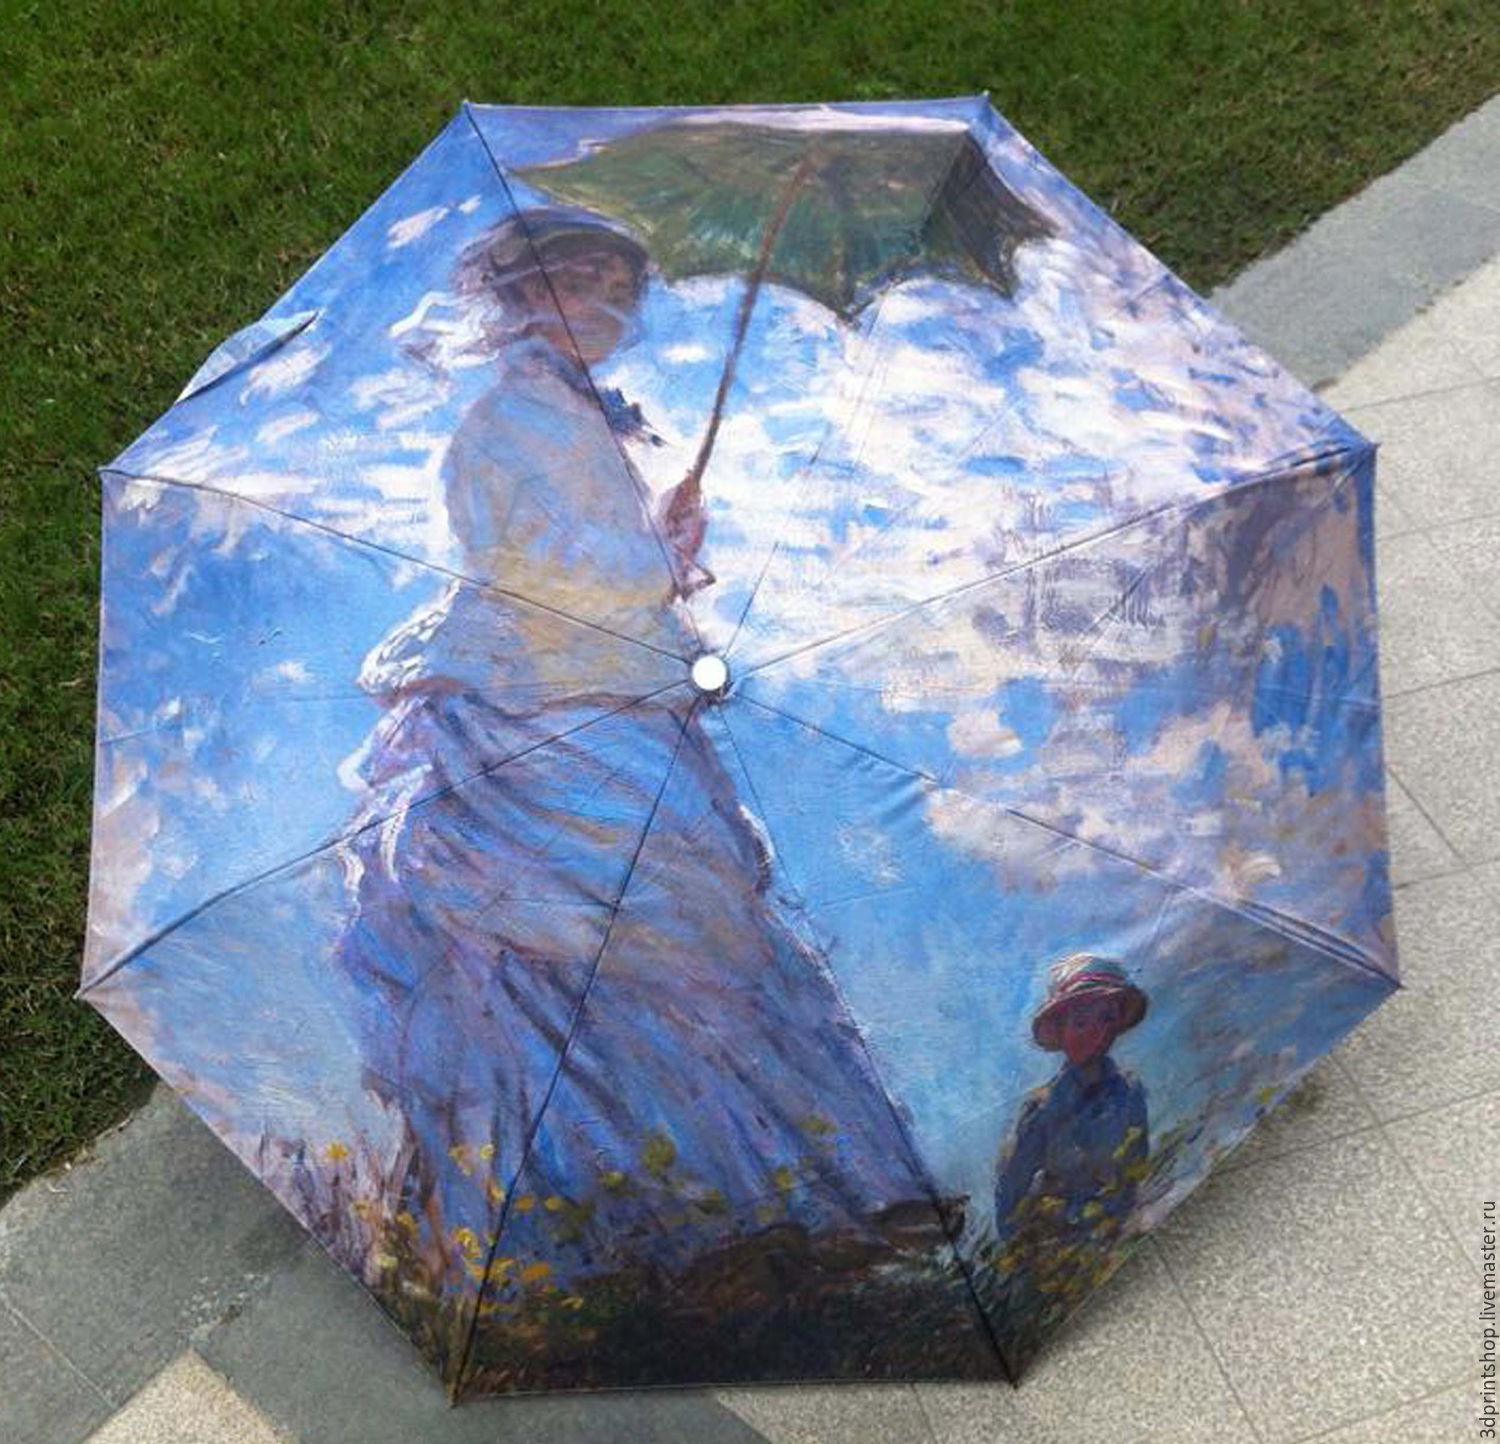 Зонты в искусстве